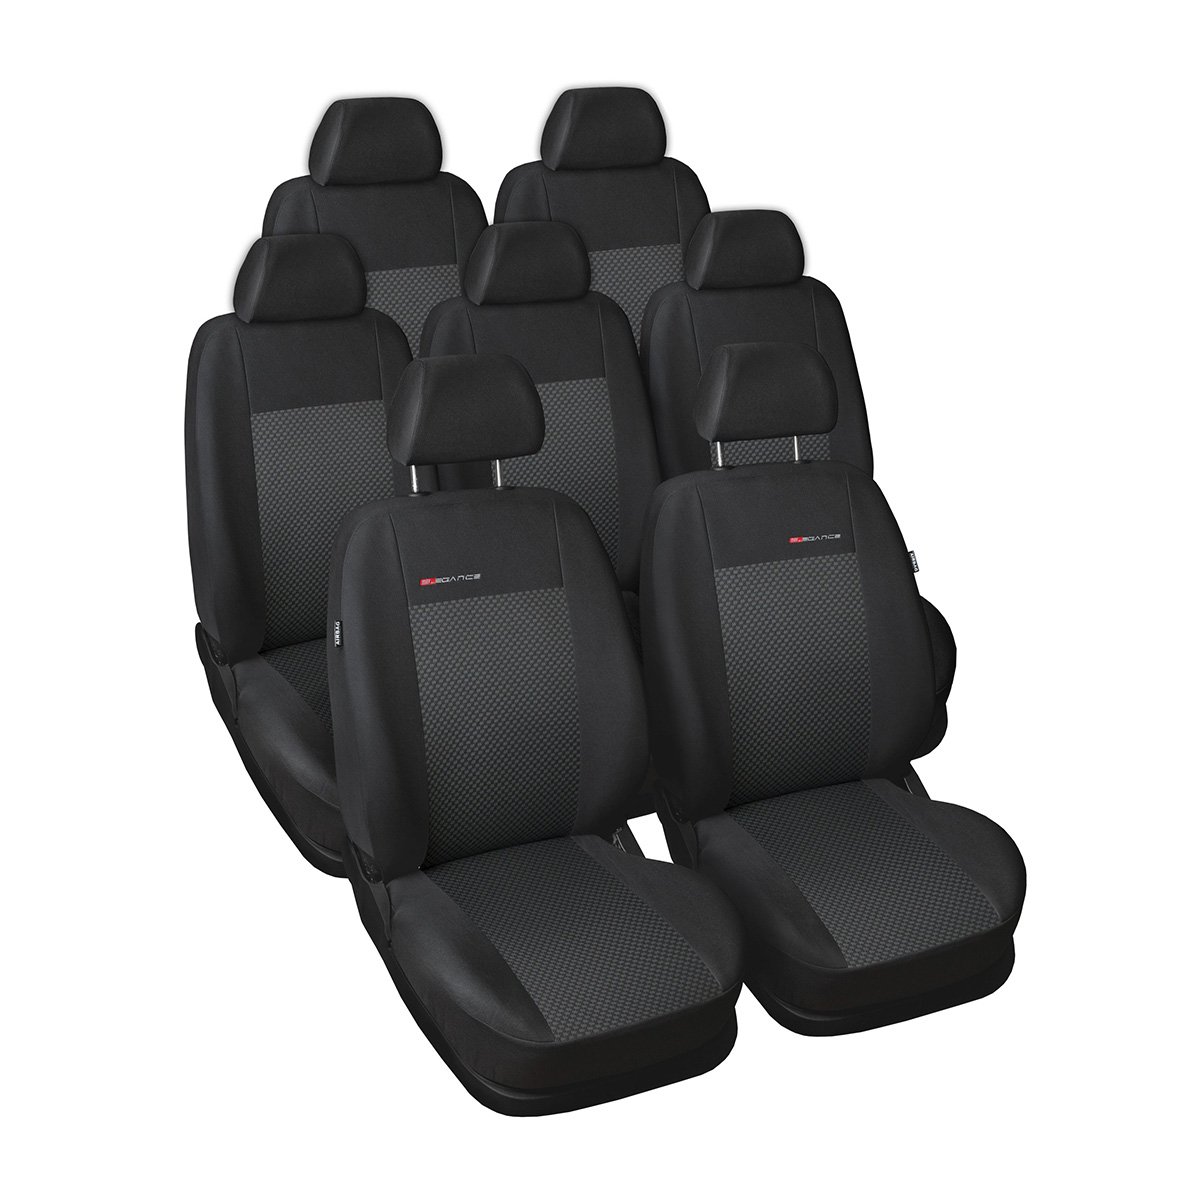 Mossa - Maßgeschneiderte Sitzbezüge Auto kompatibel mit Seat Alhambra Van (1996-2010) - 7 Sitze - Autositzbezüge Schonbezüge für Autositze - E3 von Mossa